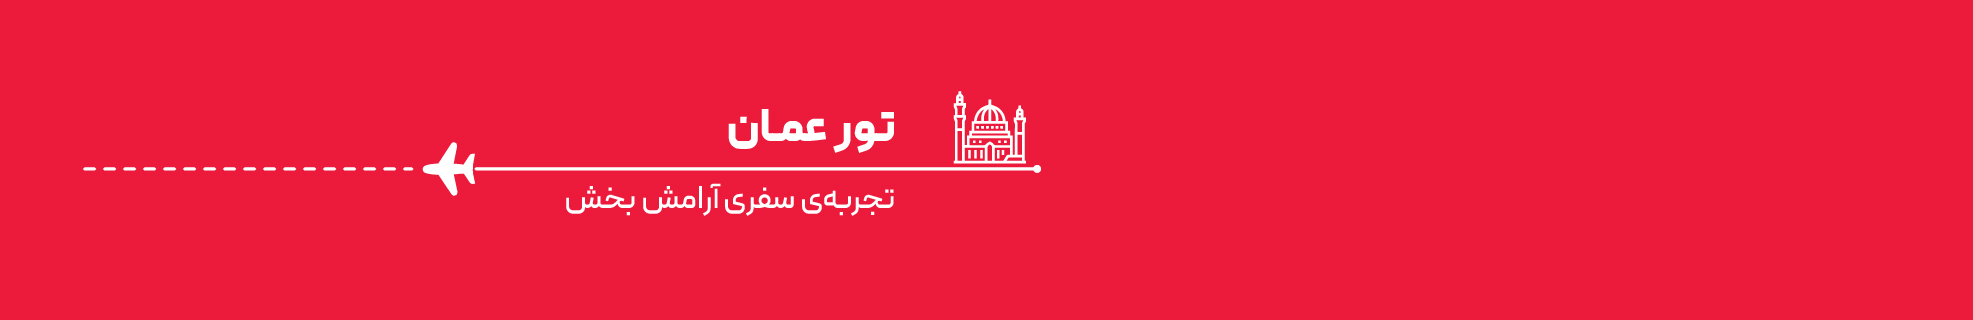 تور اقتصادی عمان